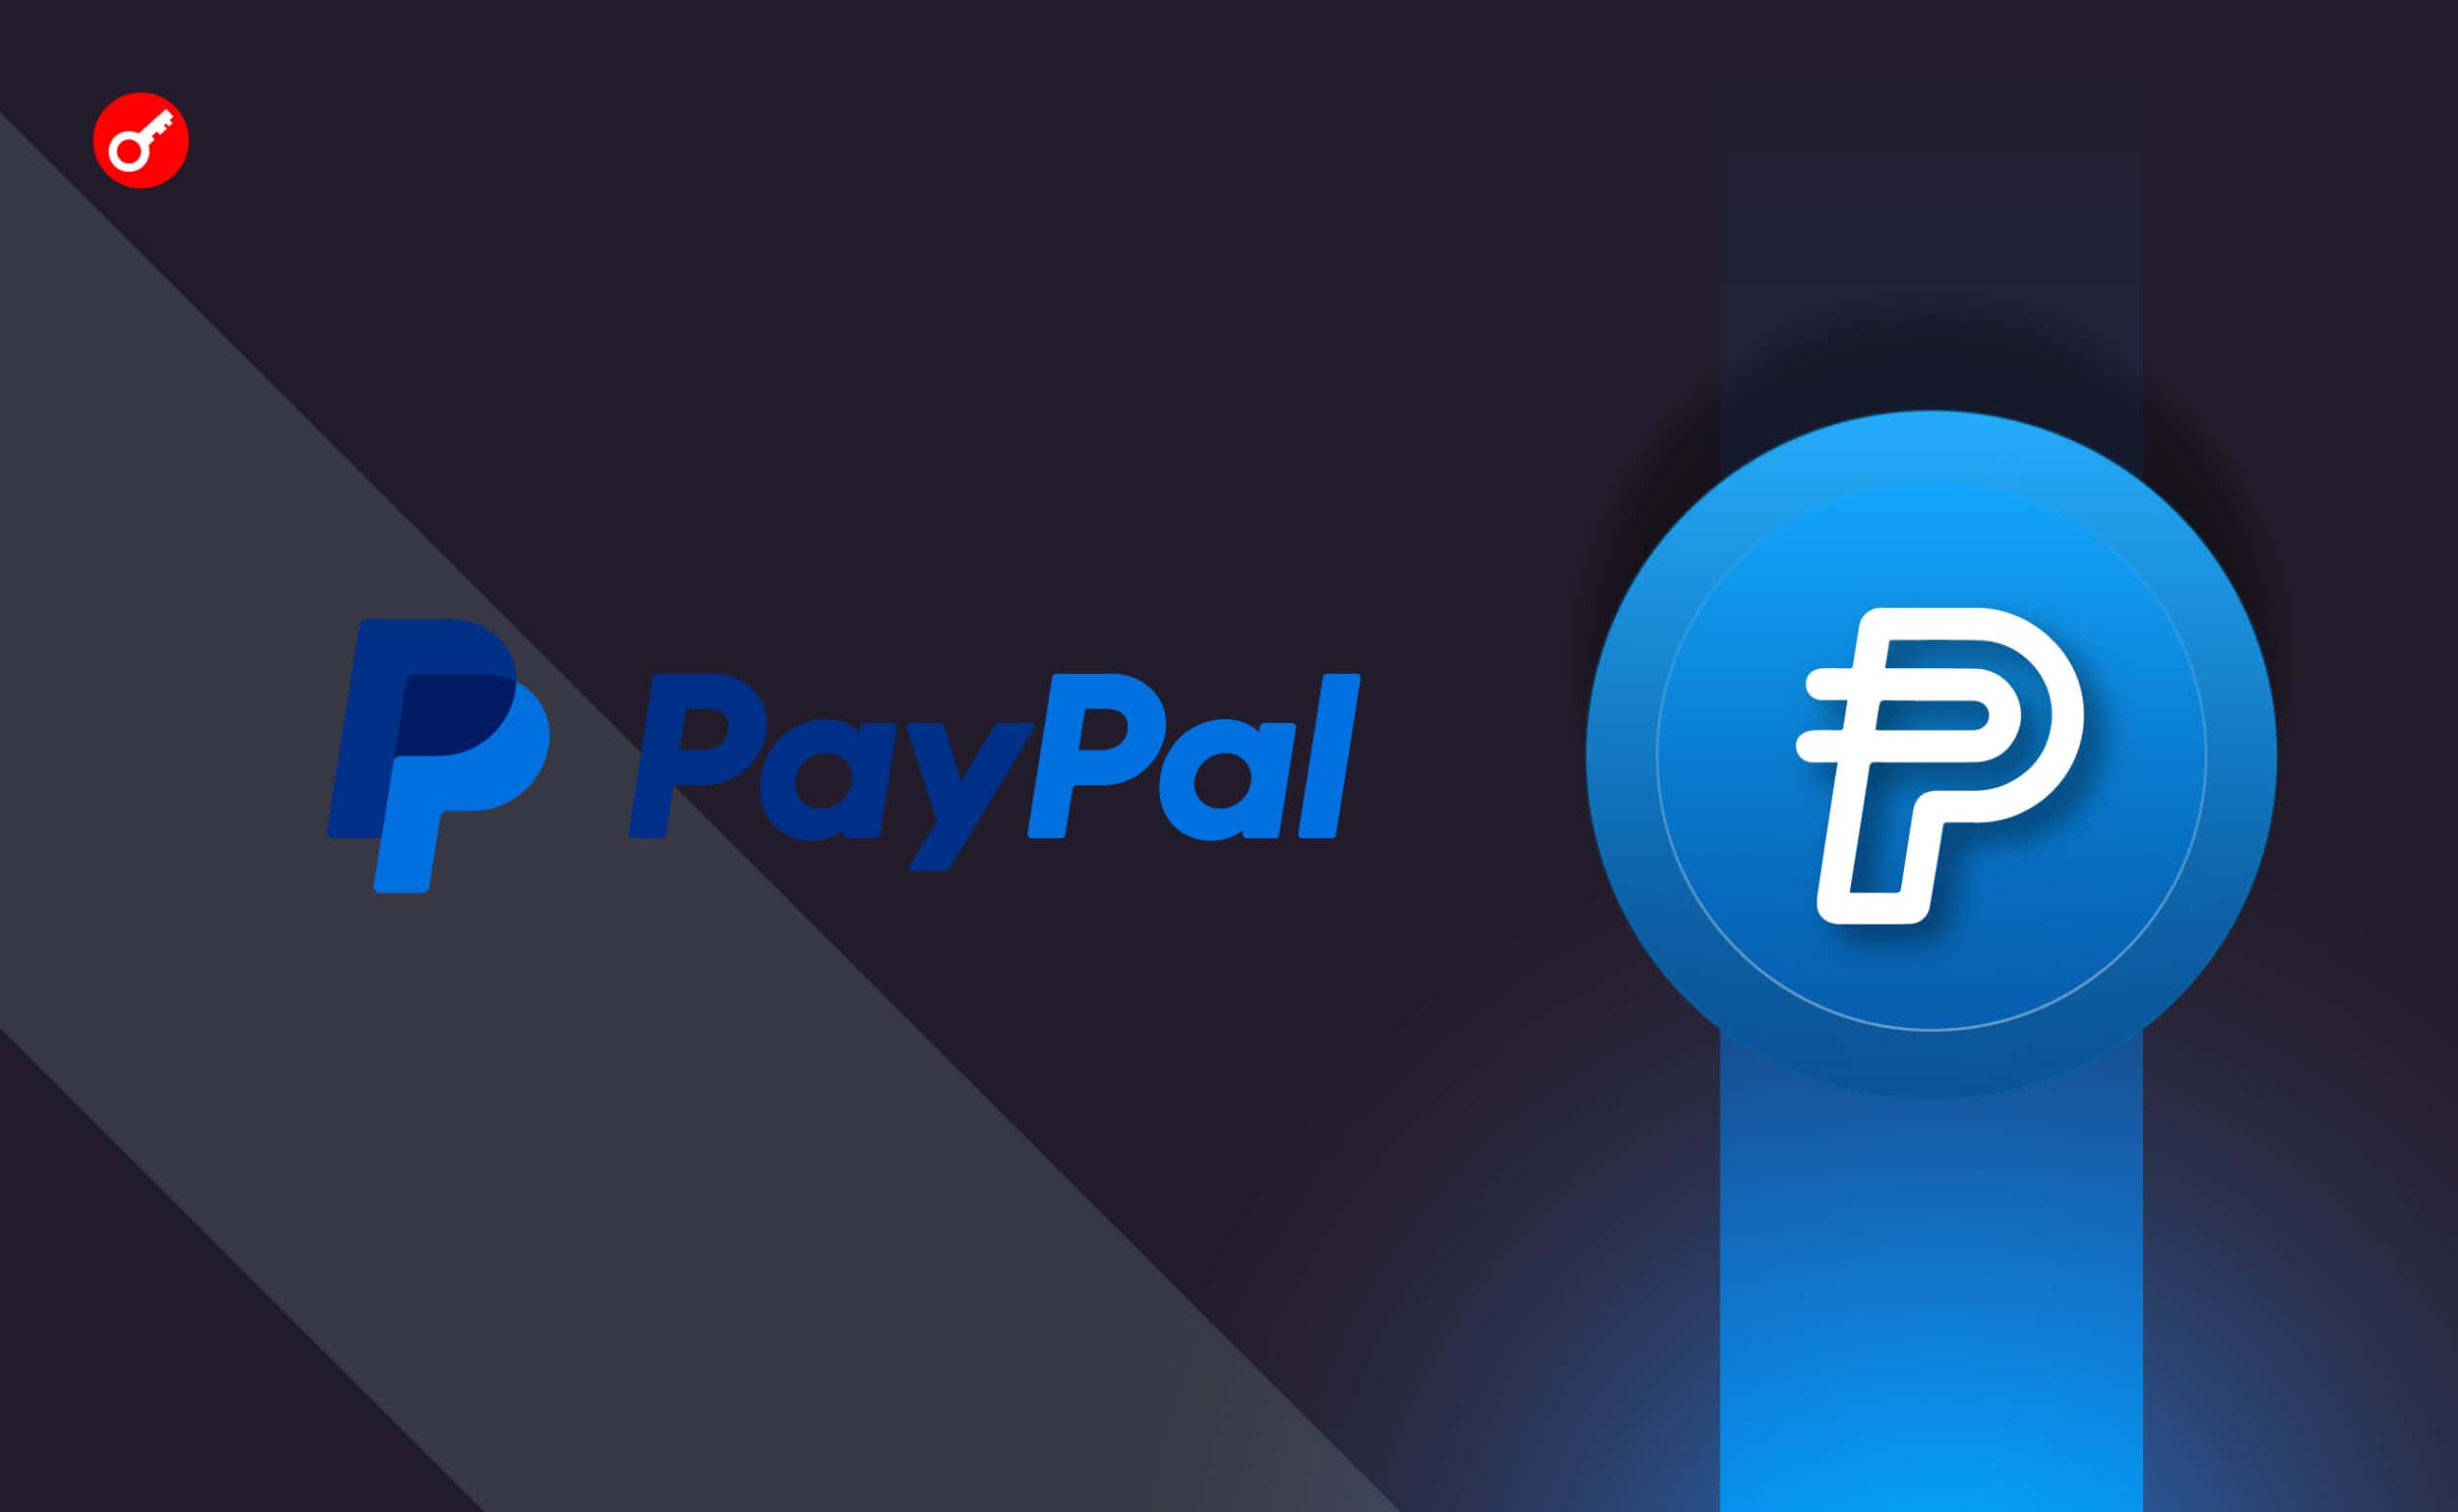 Стейблкоин PayPal вошел в топ-3 пулов ликвидности на Curve. Заглавный коллаж новости.